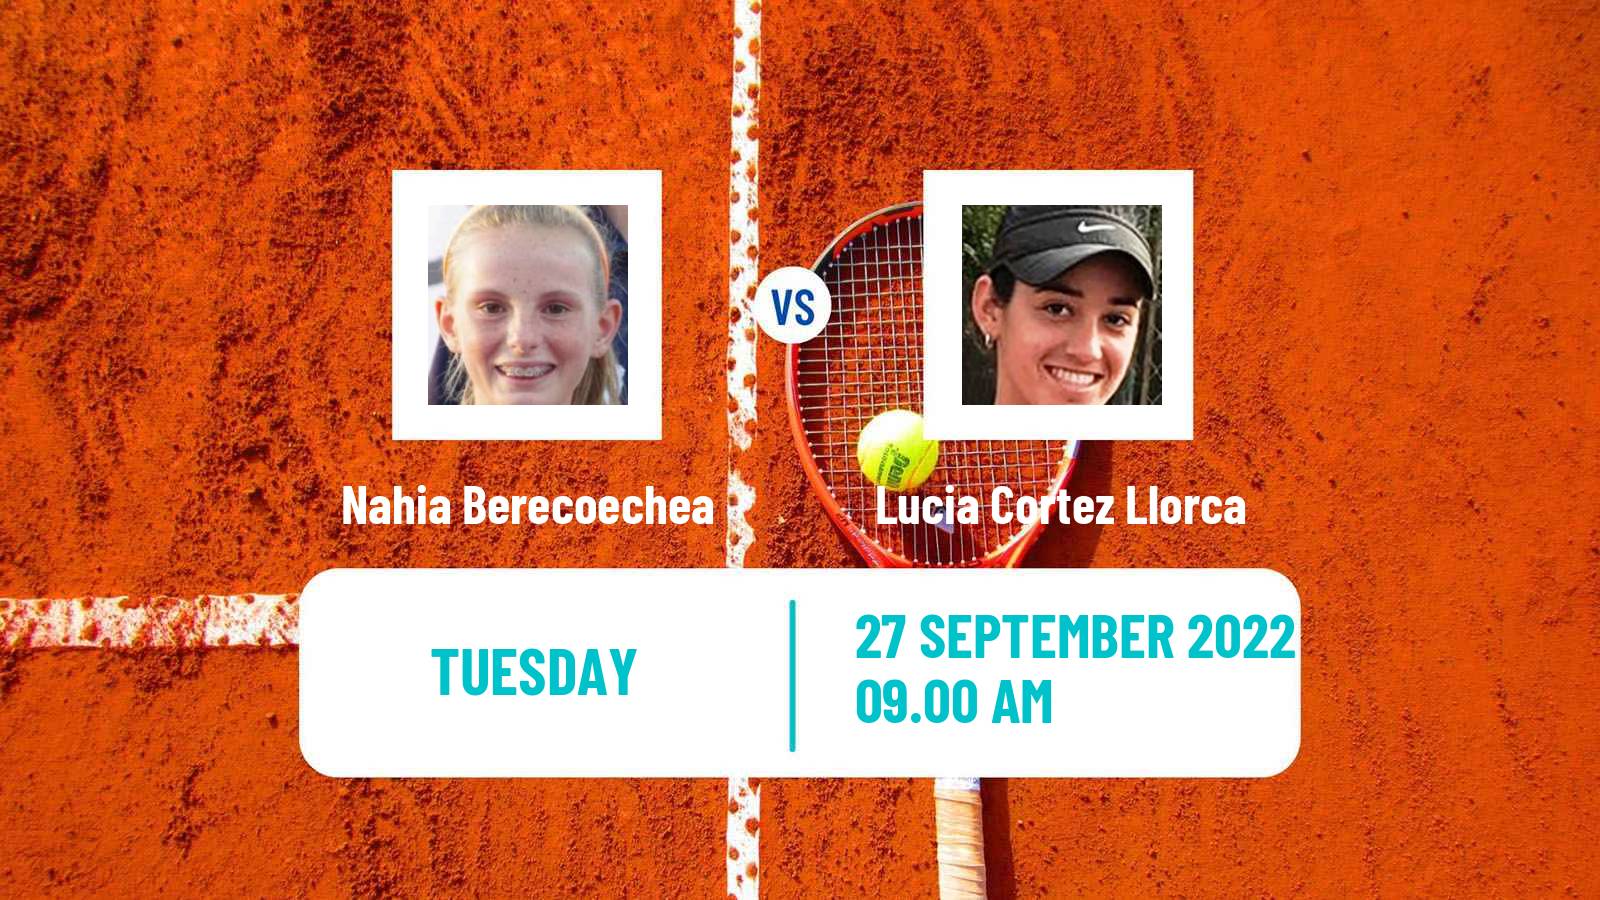 Tennis ITF Tournaments Nahia Berecoechea - Lucia Cortez Llorca